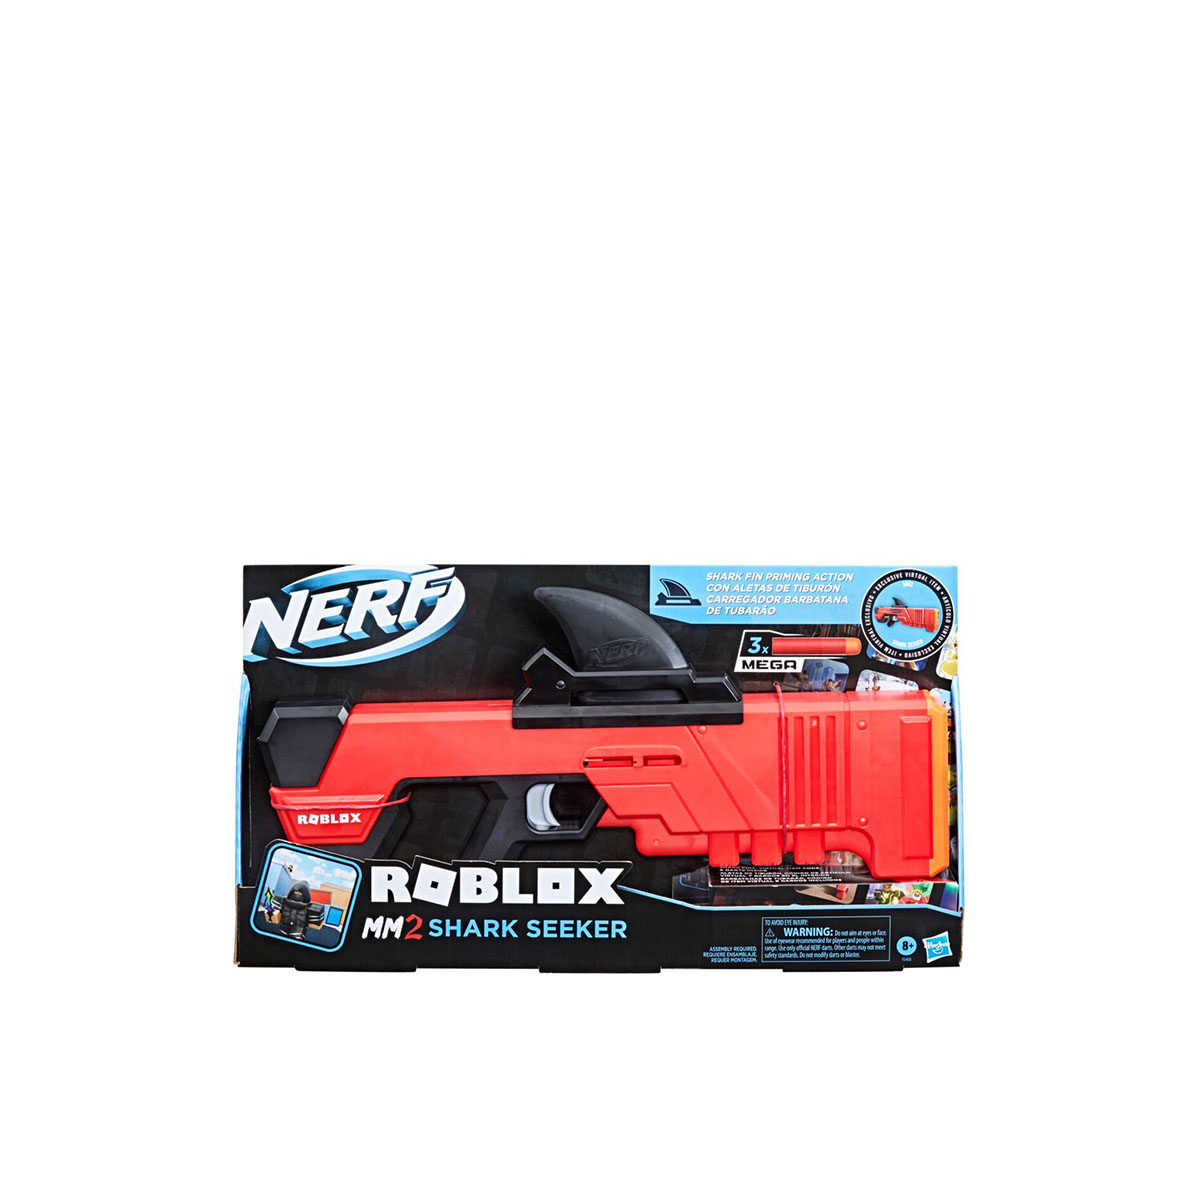 NERF Roblox MM2 Shark Seeker Dart Blaster. Gun, Only 4 Darts